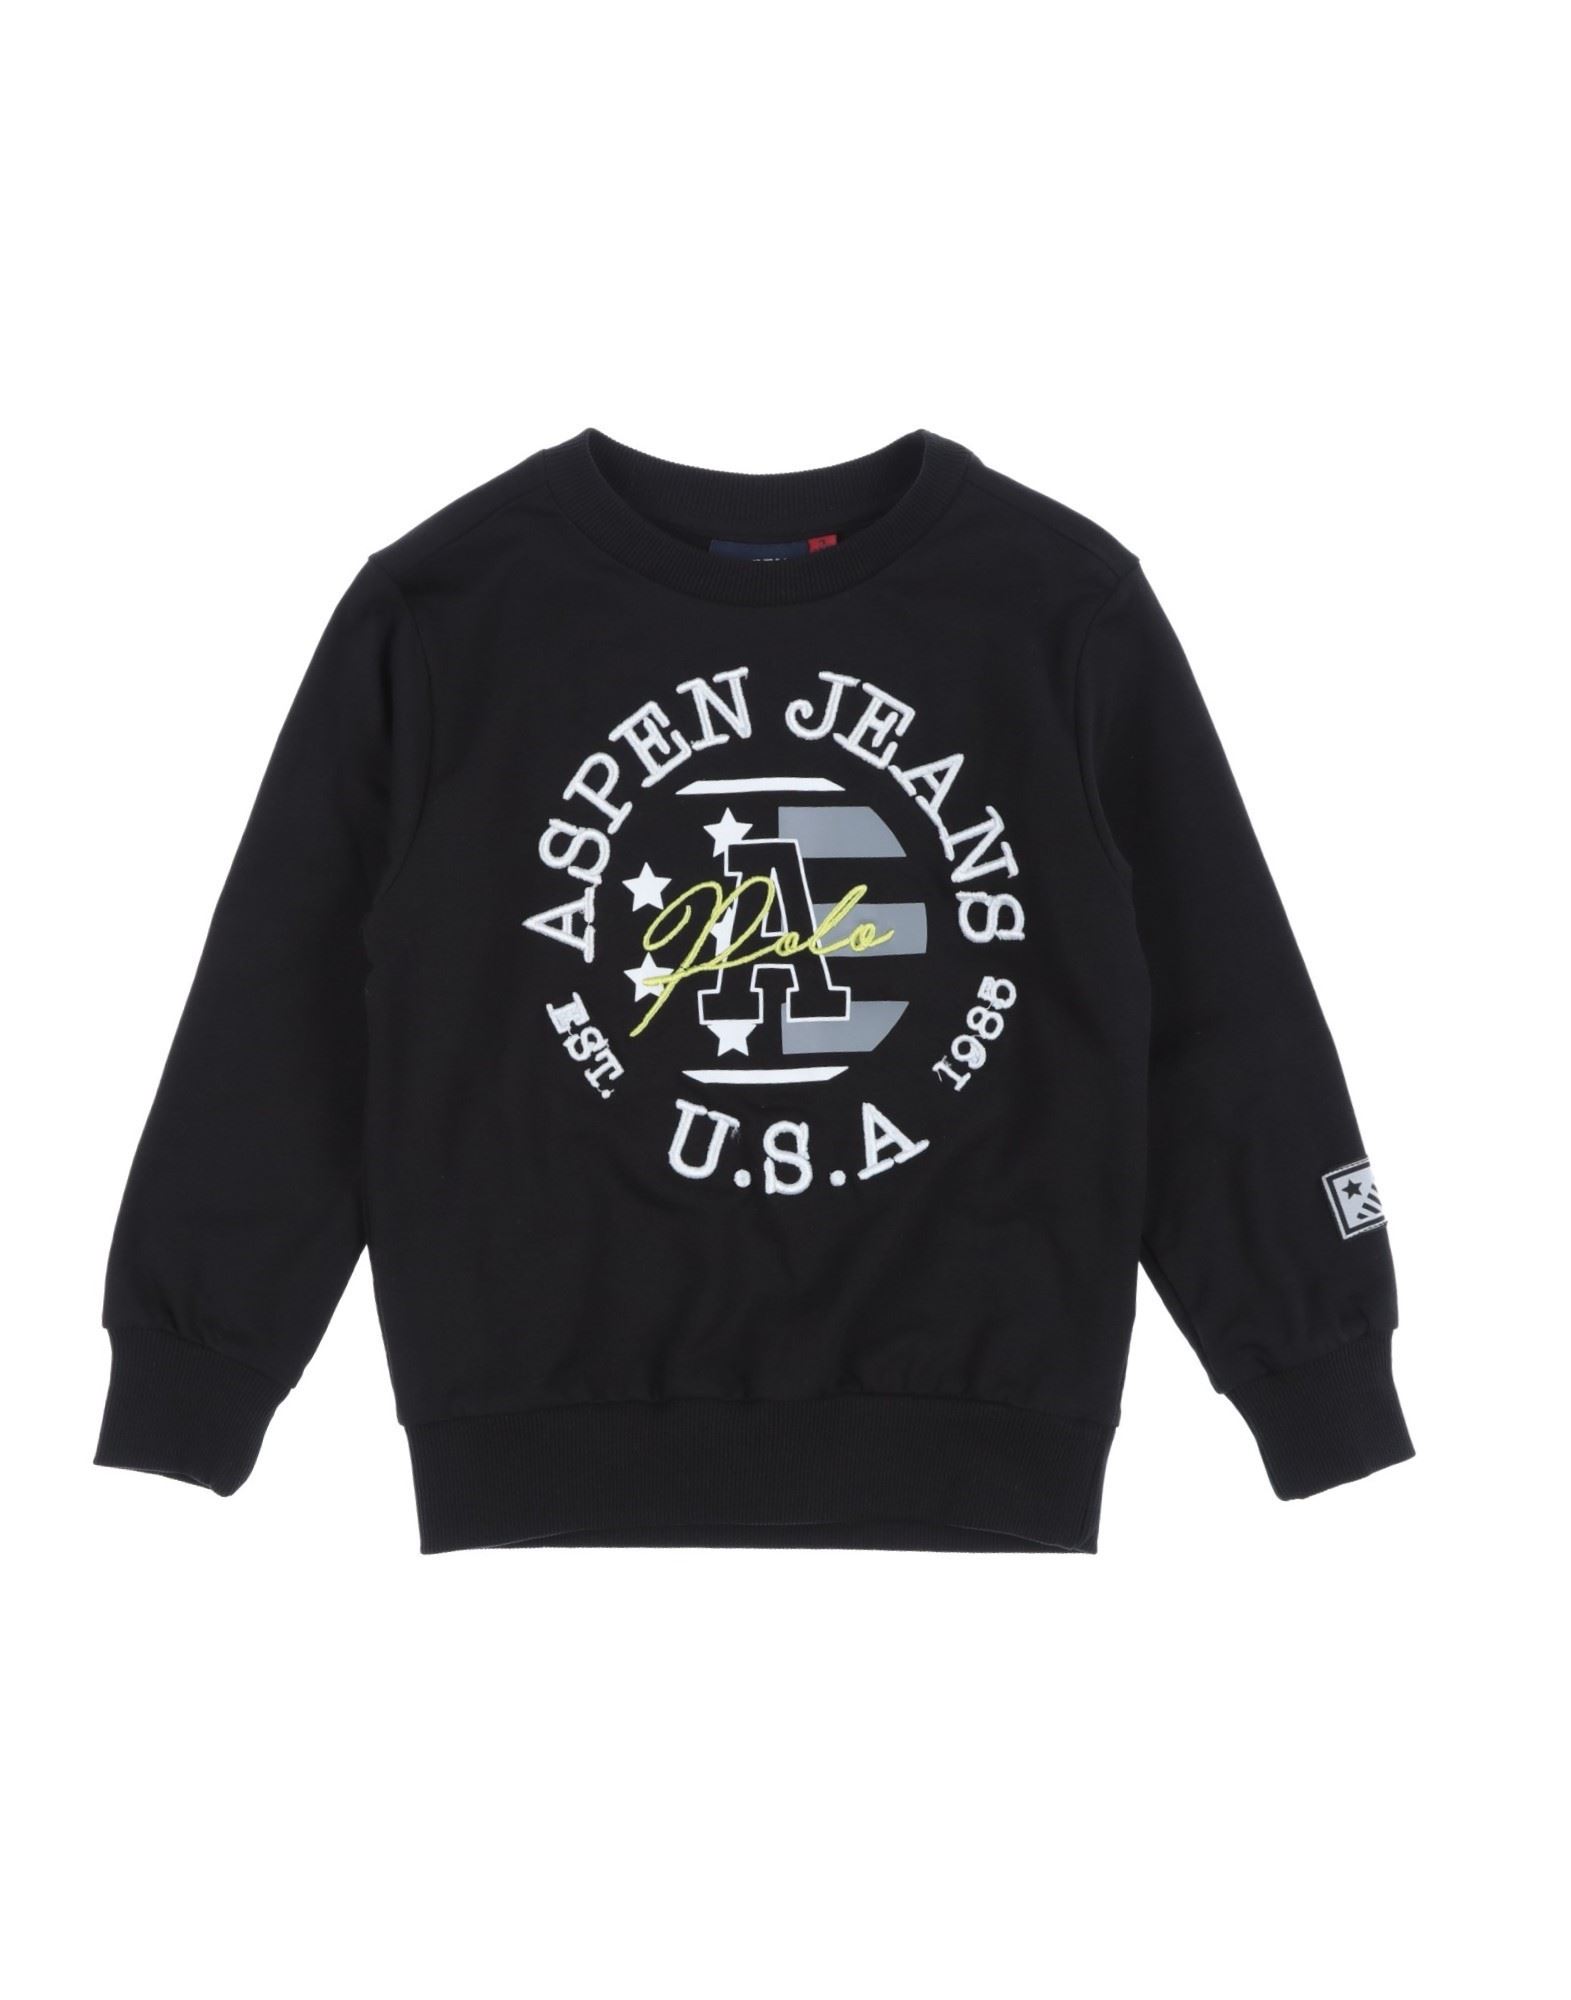 Aspen Polo Club Kids'  Sweatshirts In Black